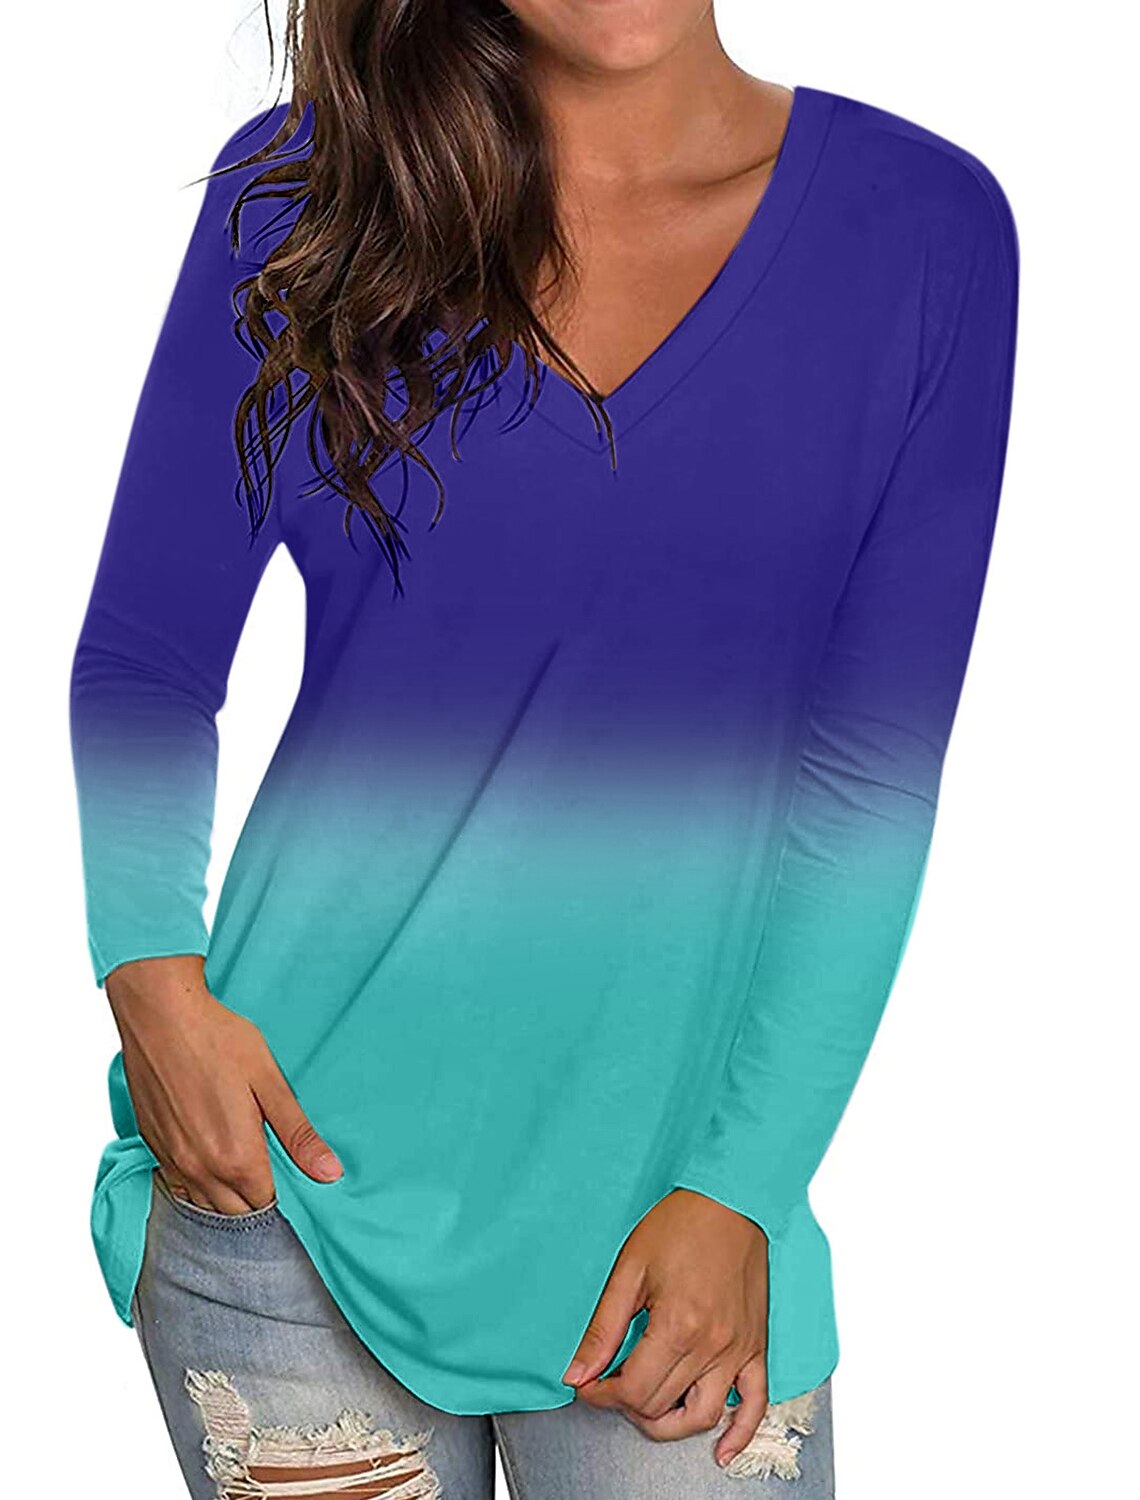 Meikosks Womens Sweatshirt Colorblock Printed Tops Long Sleeve Hoodies Gradient Tops Pullover